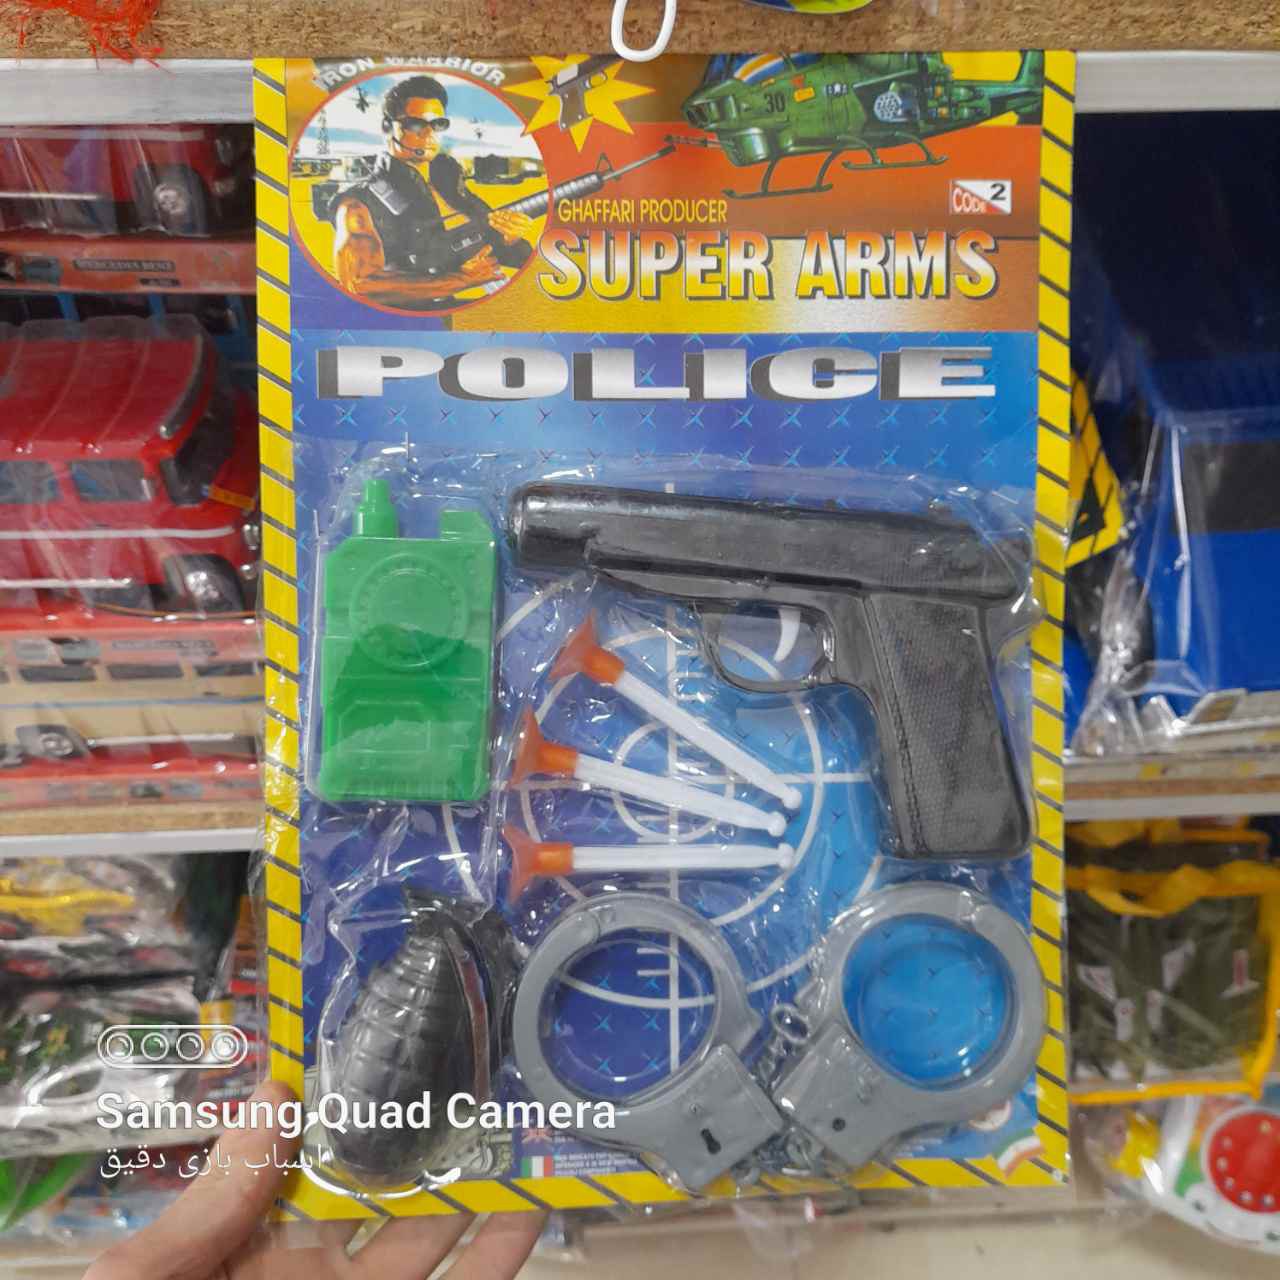   خرید اسباب بازی پلیس شجاع به قیمت مناسب 5 عددی